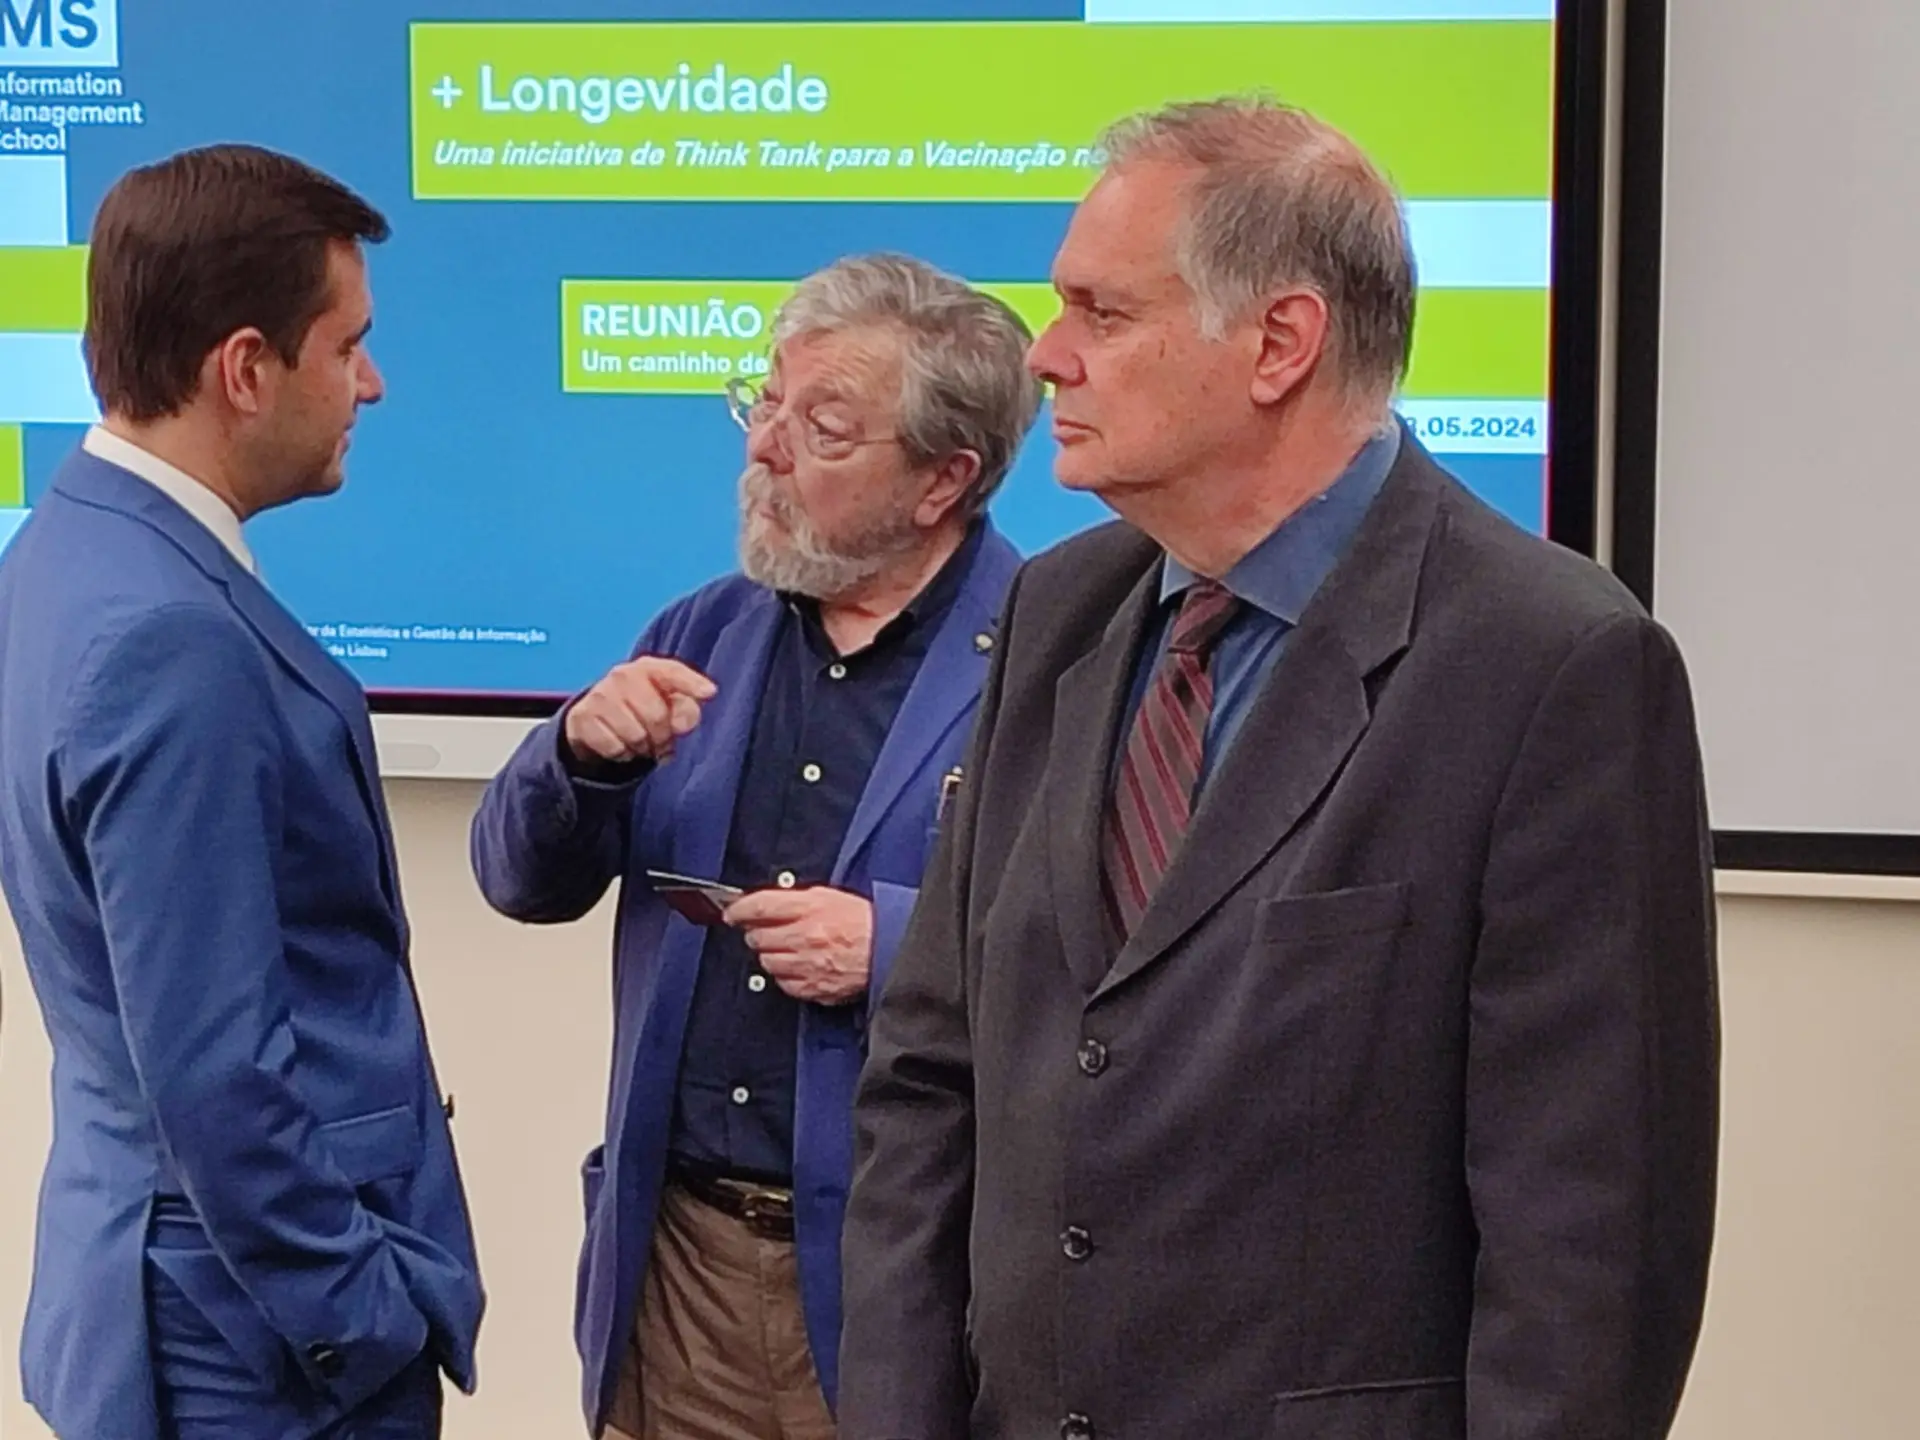 Francisco George, Ricardo Batista Leite e Henrique Lopes em troca de impressões antes do início da terceira reunião do projeto + Longevidade